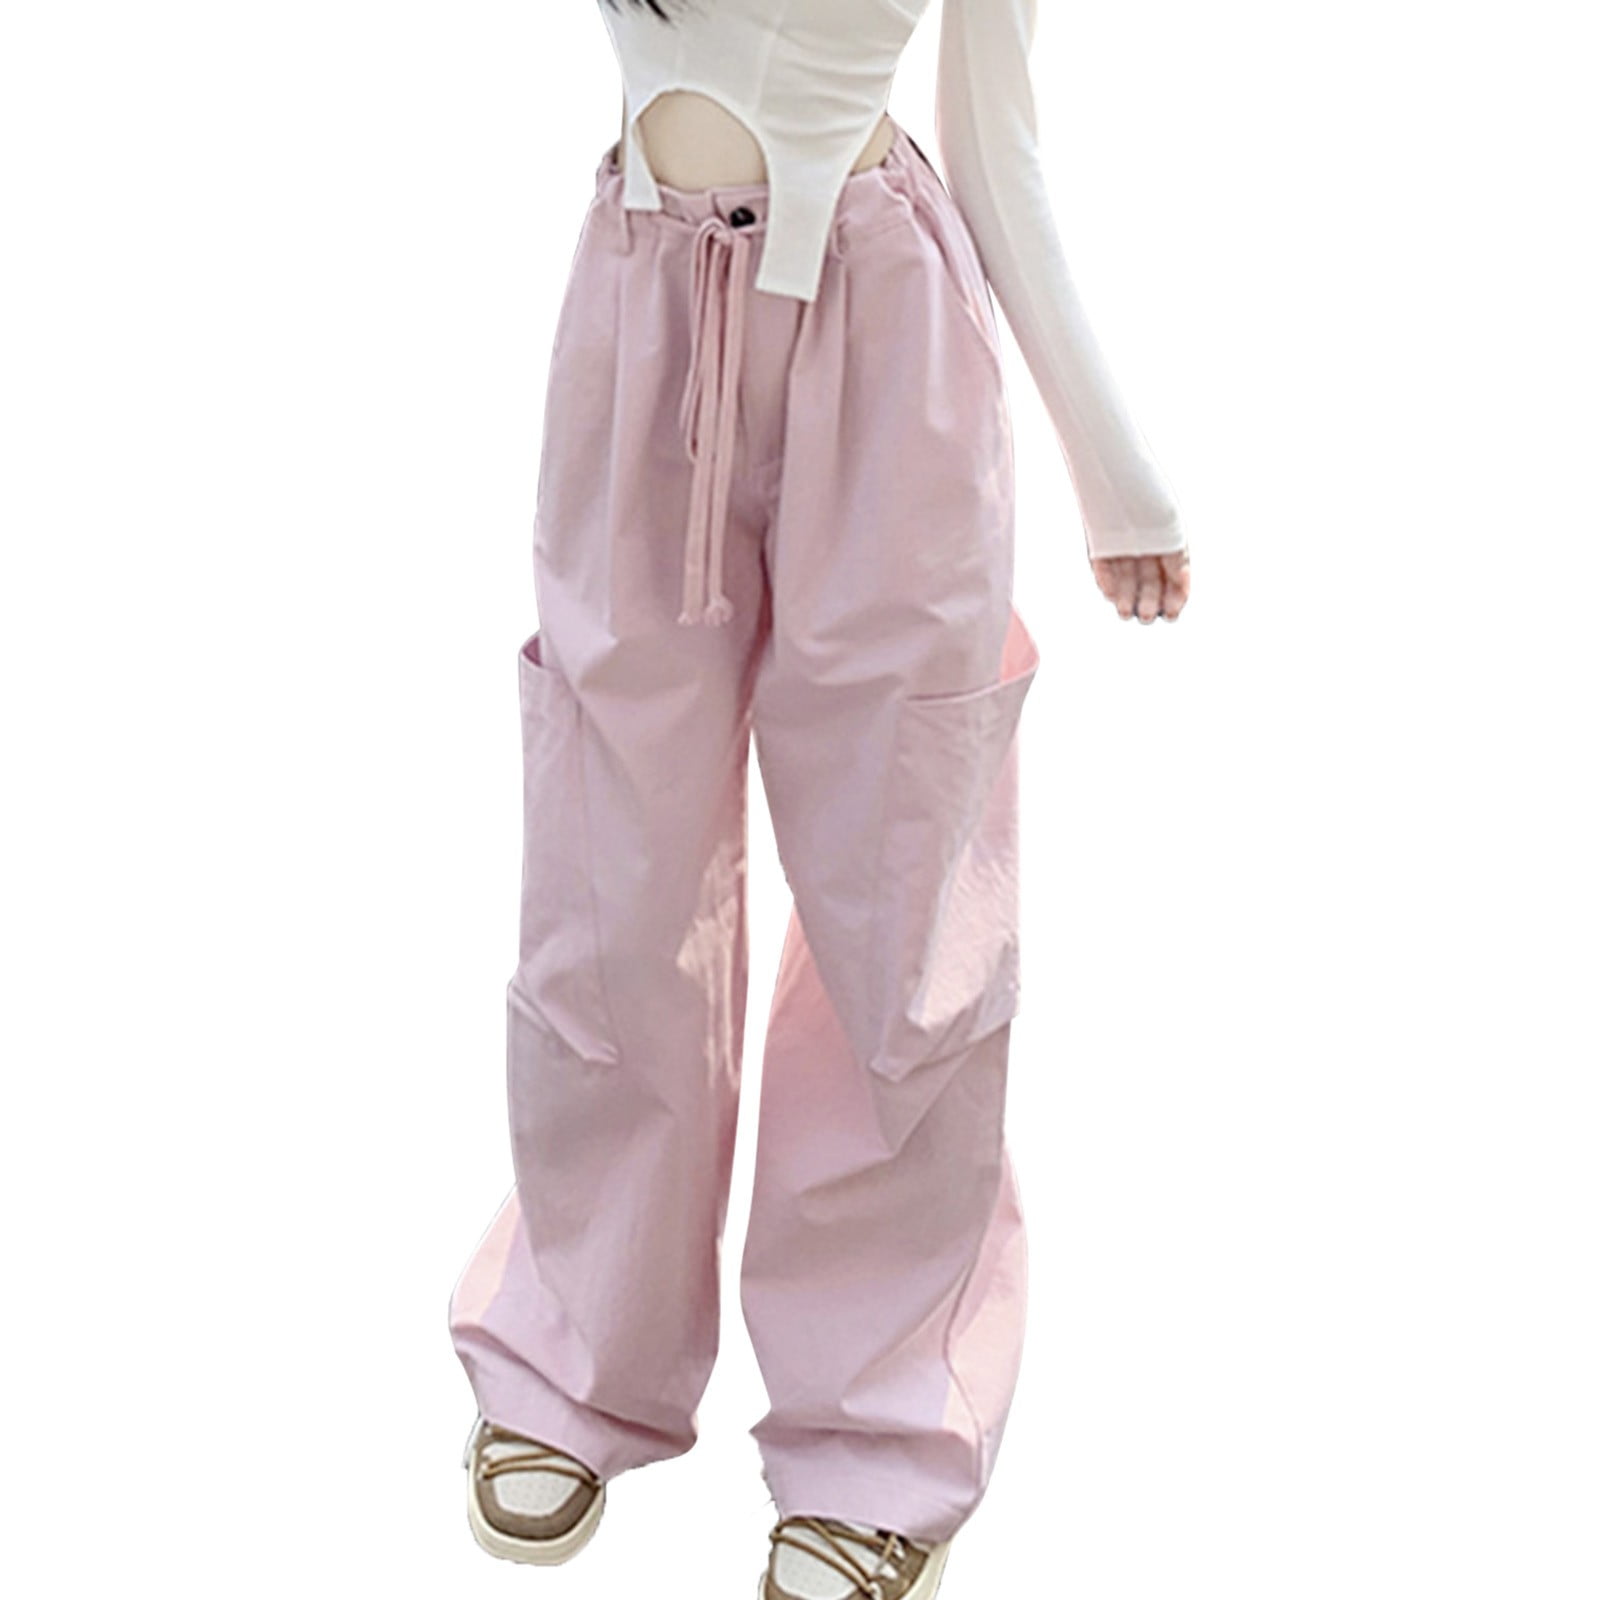 zuwimk Wide Leg Pants For Women,Women's Casual Cotton Linen Pant Unique  Pockets Pink,M - Walmart.com